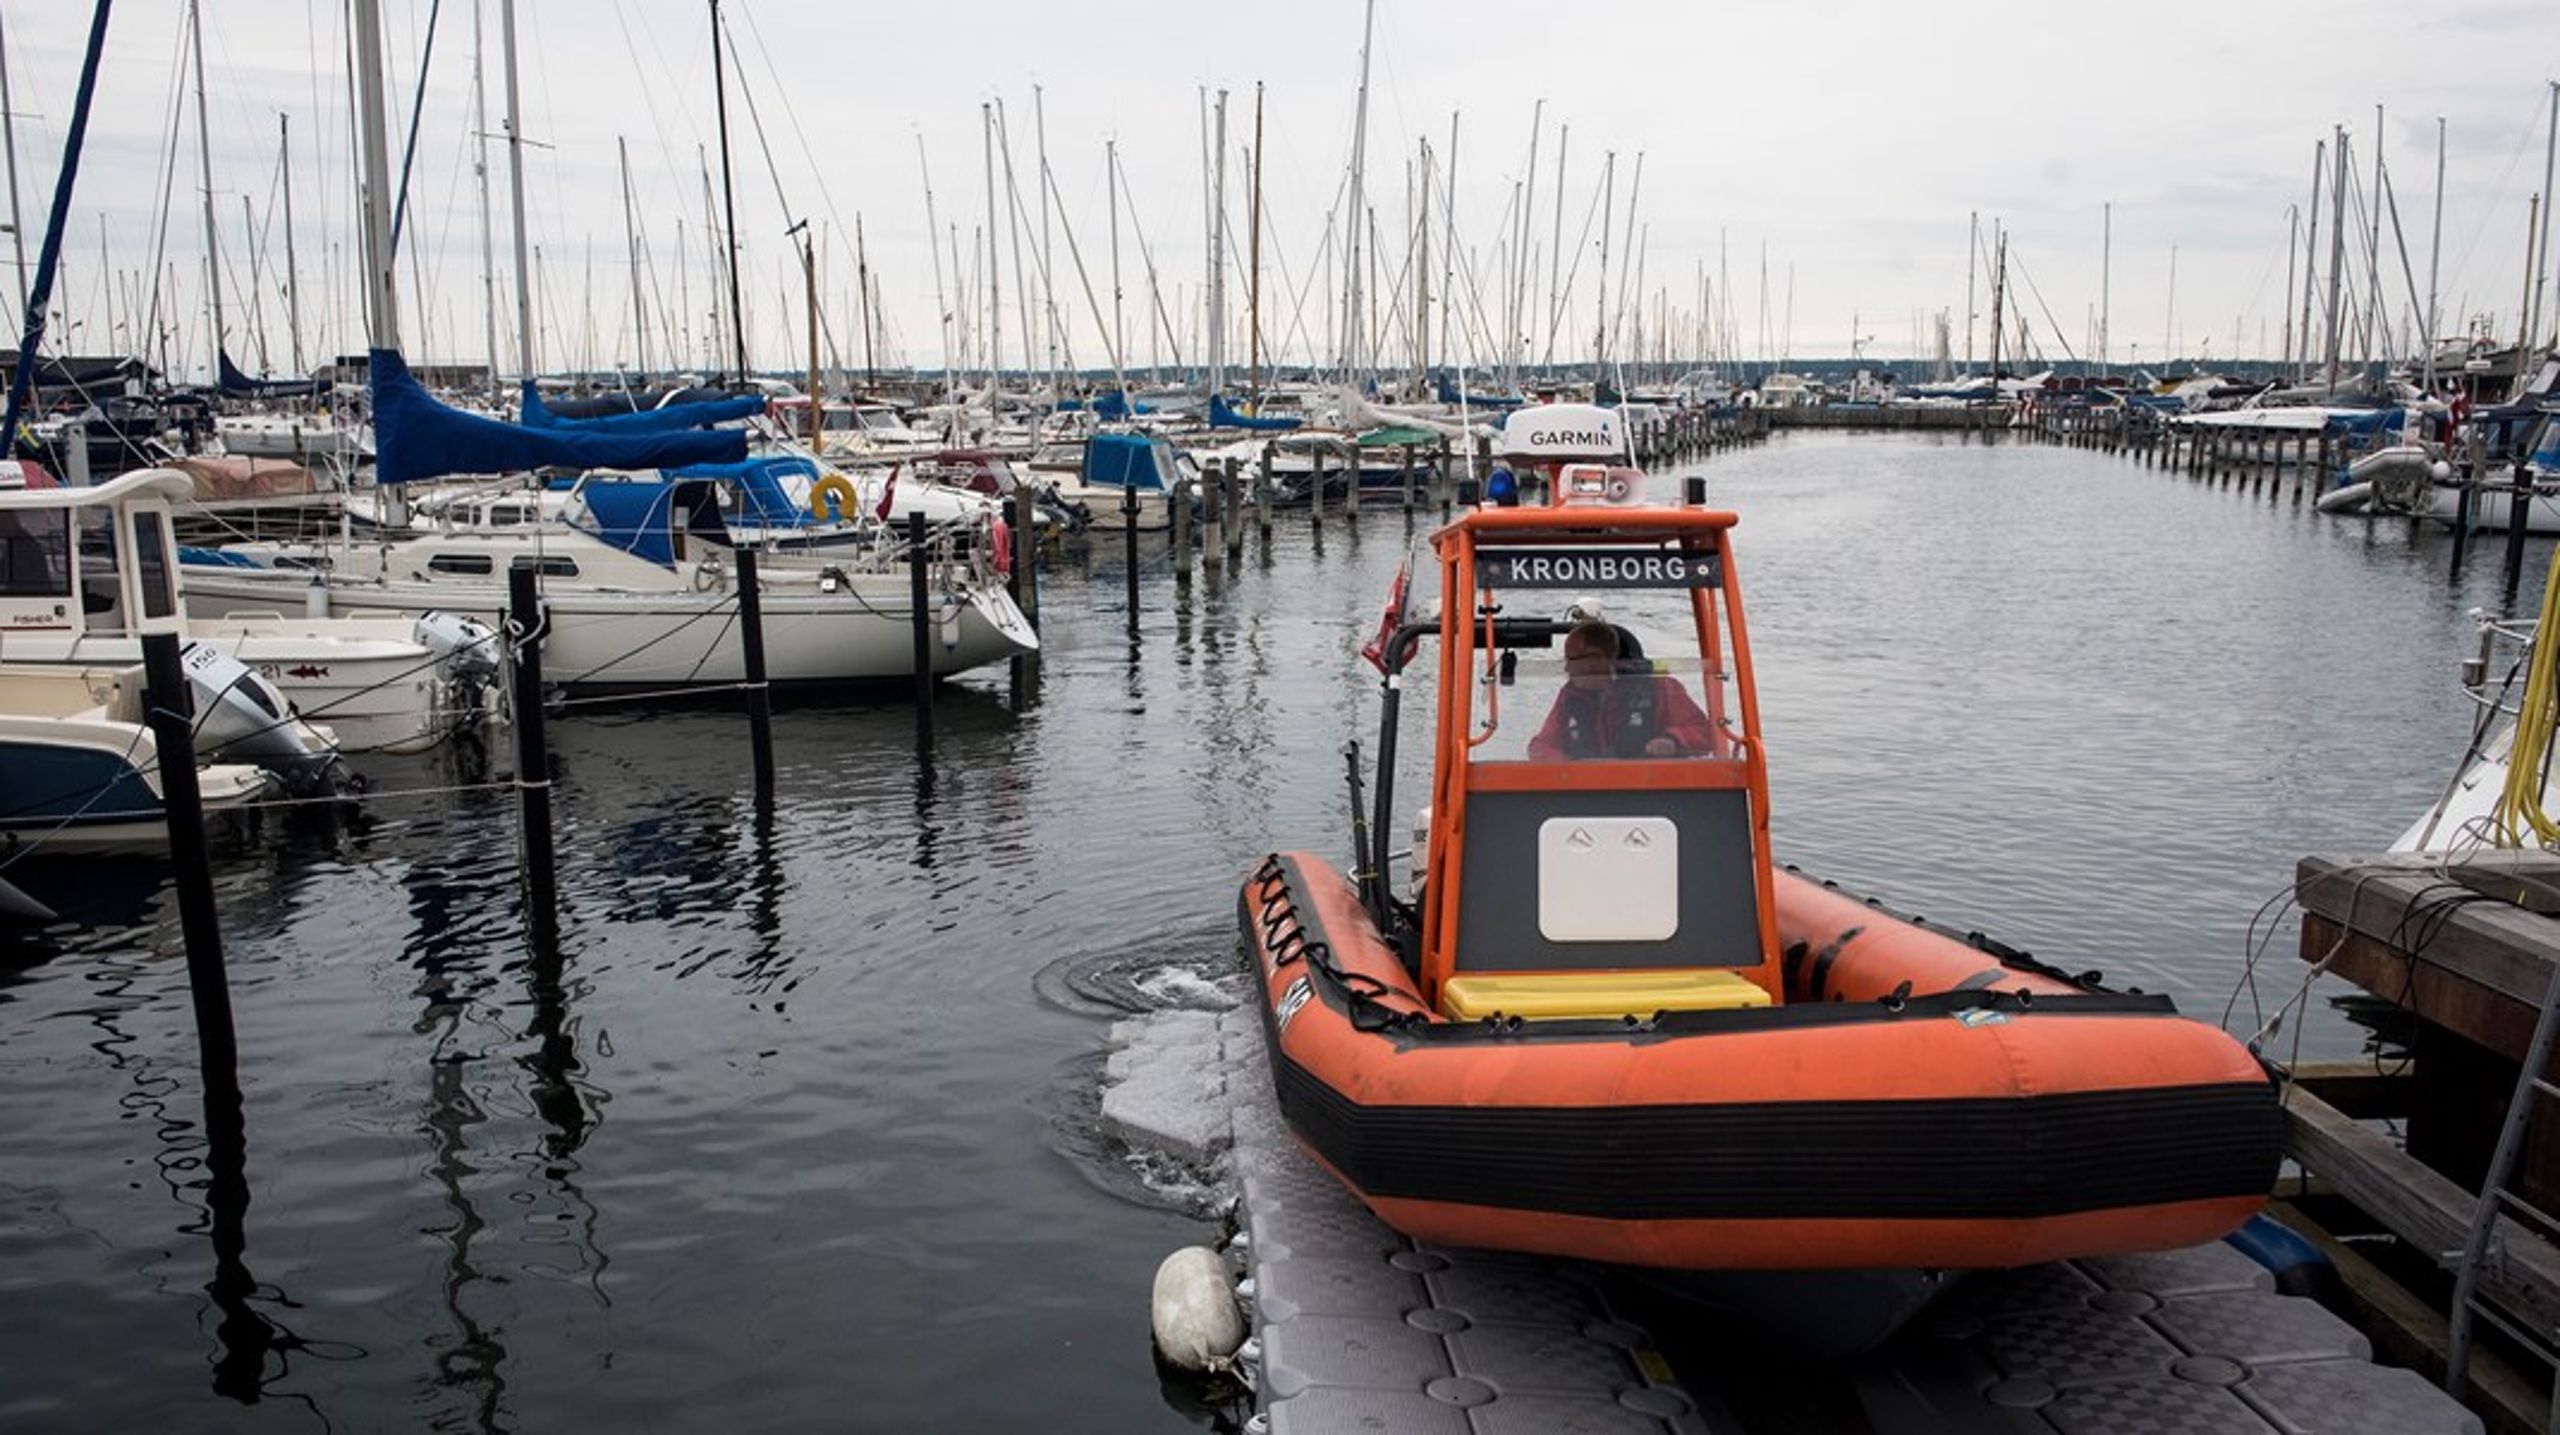 For mange drukneulykker sker i danske havne, mener transportminister Trine Bramsen (S).